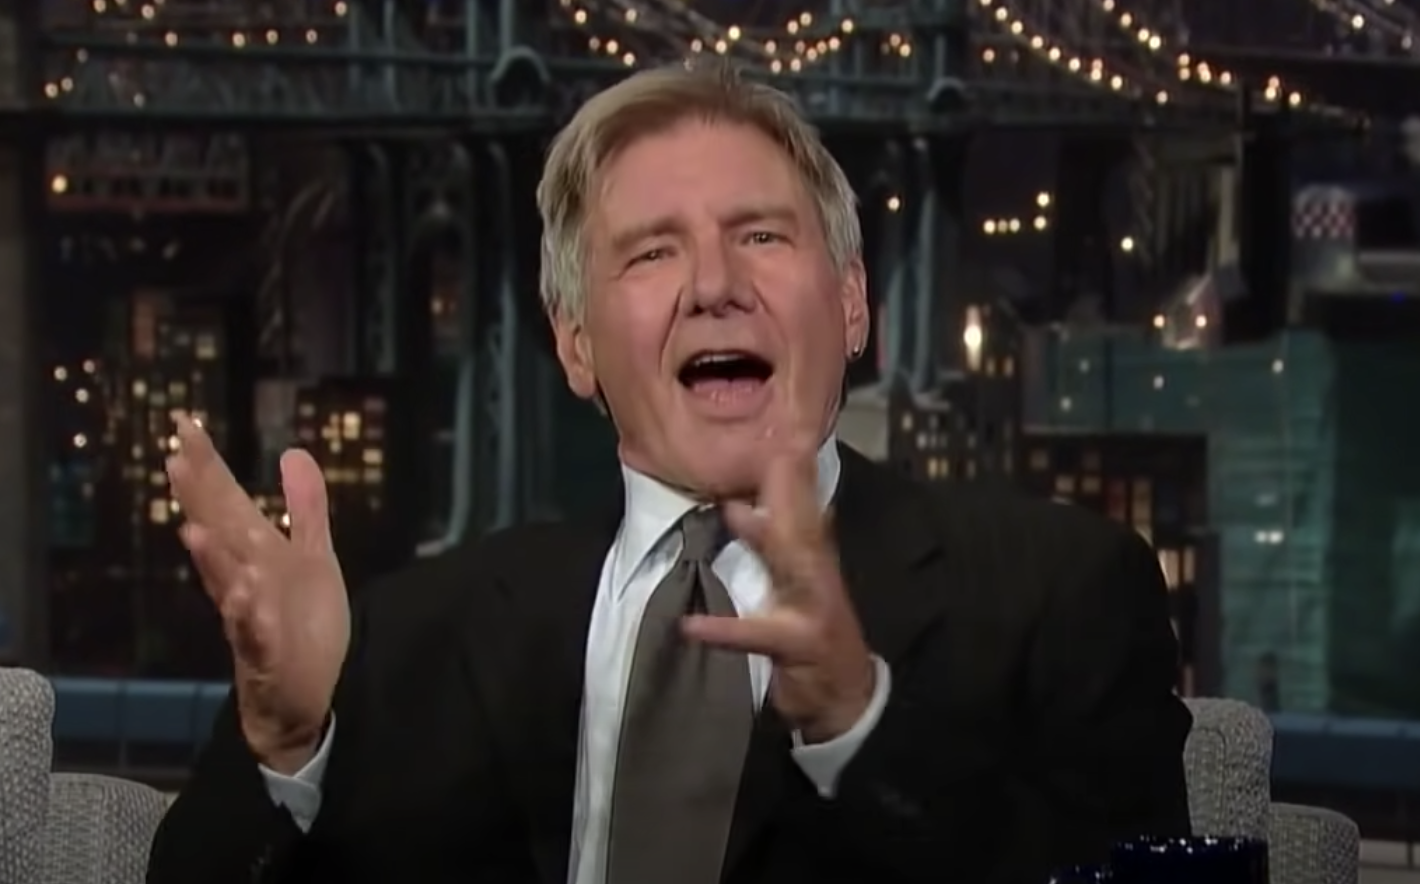 Harrison Ford telling a joke